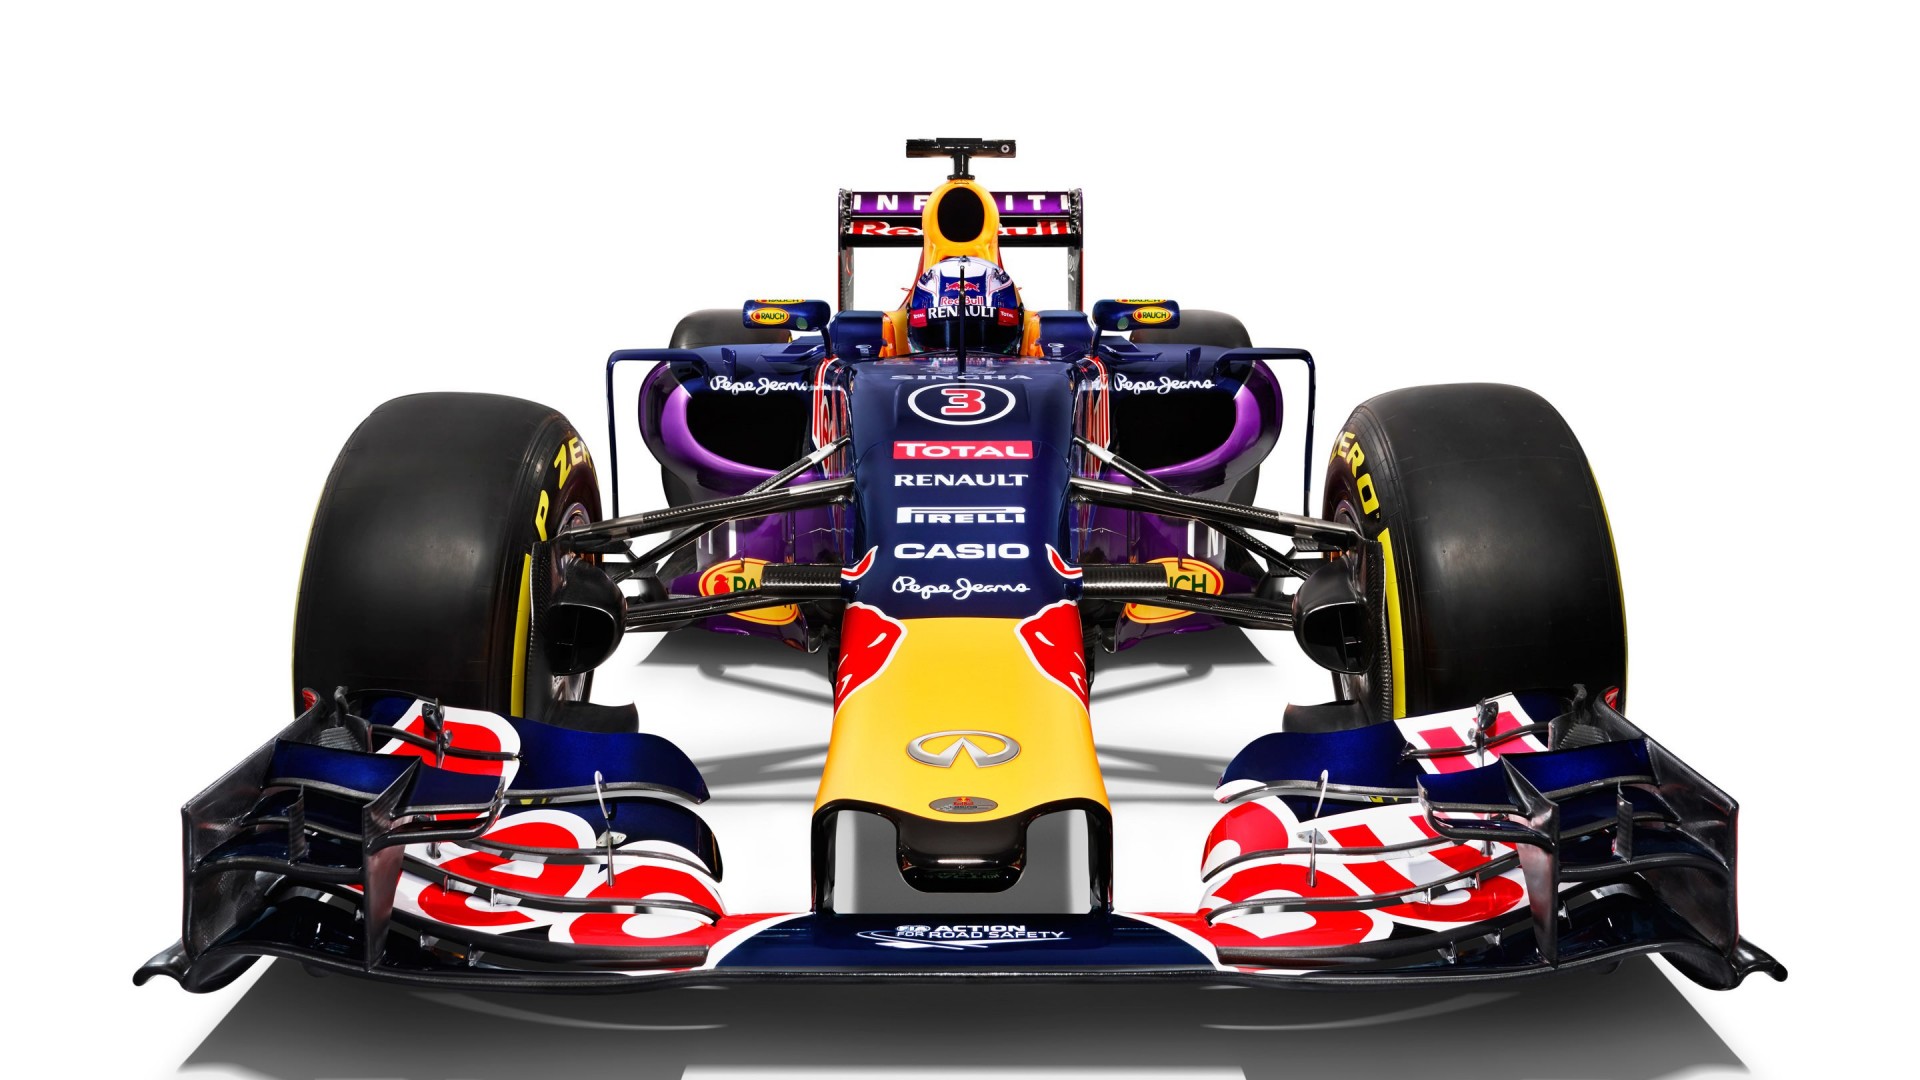 Infiniti Red Bull Racing RB11 2015 Formula 1 Car Wallpaper for Desktop 1920x1080